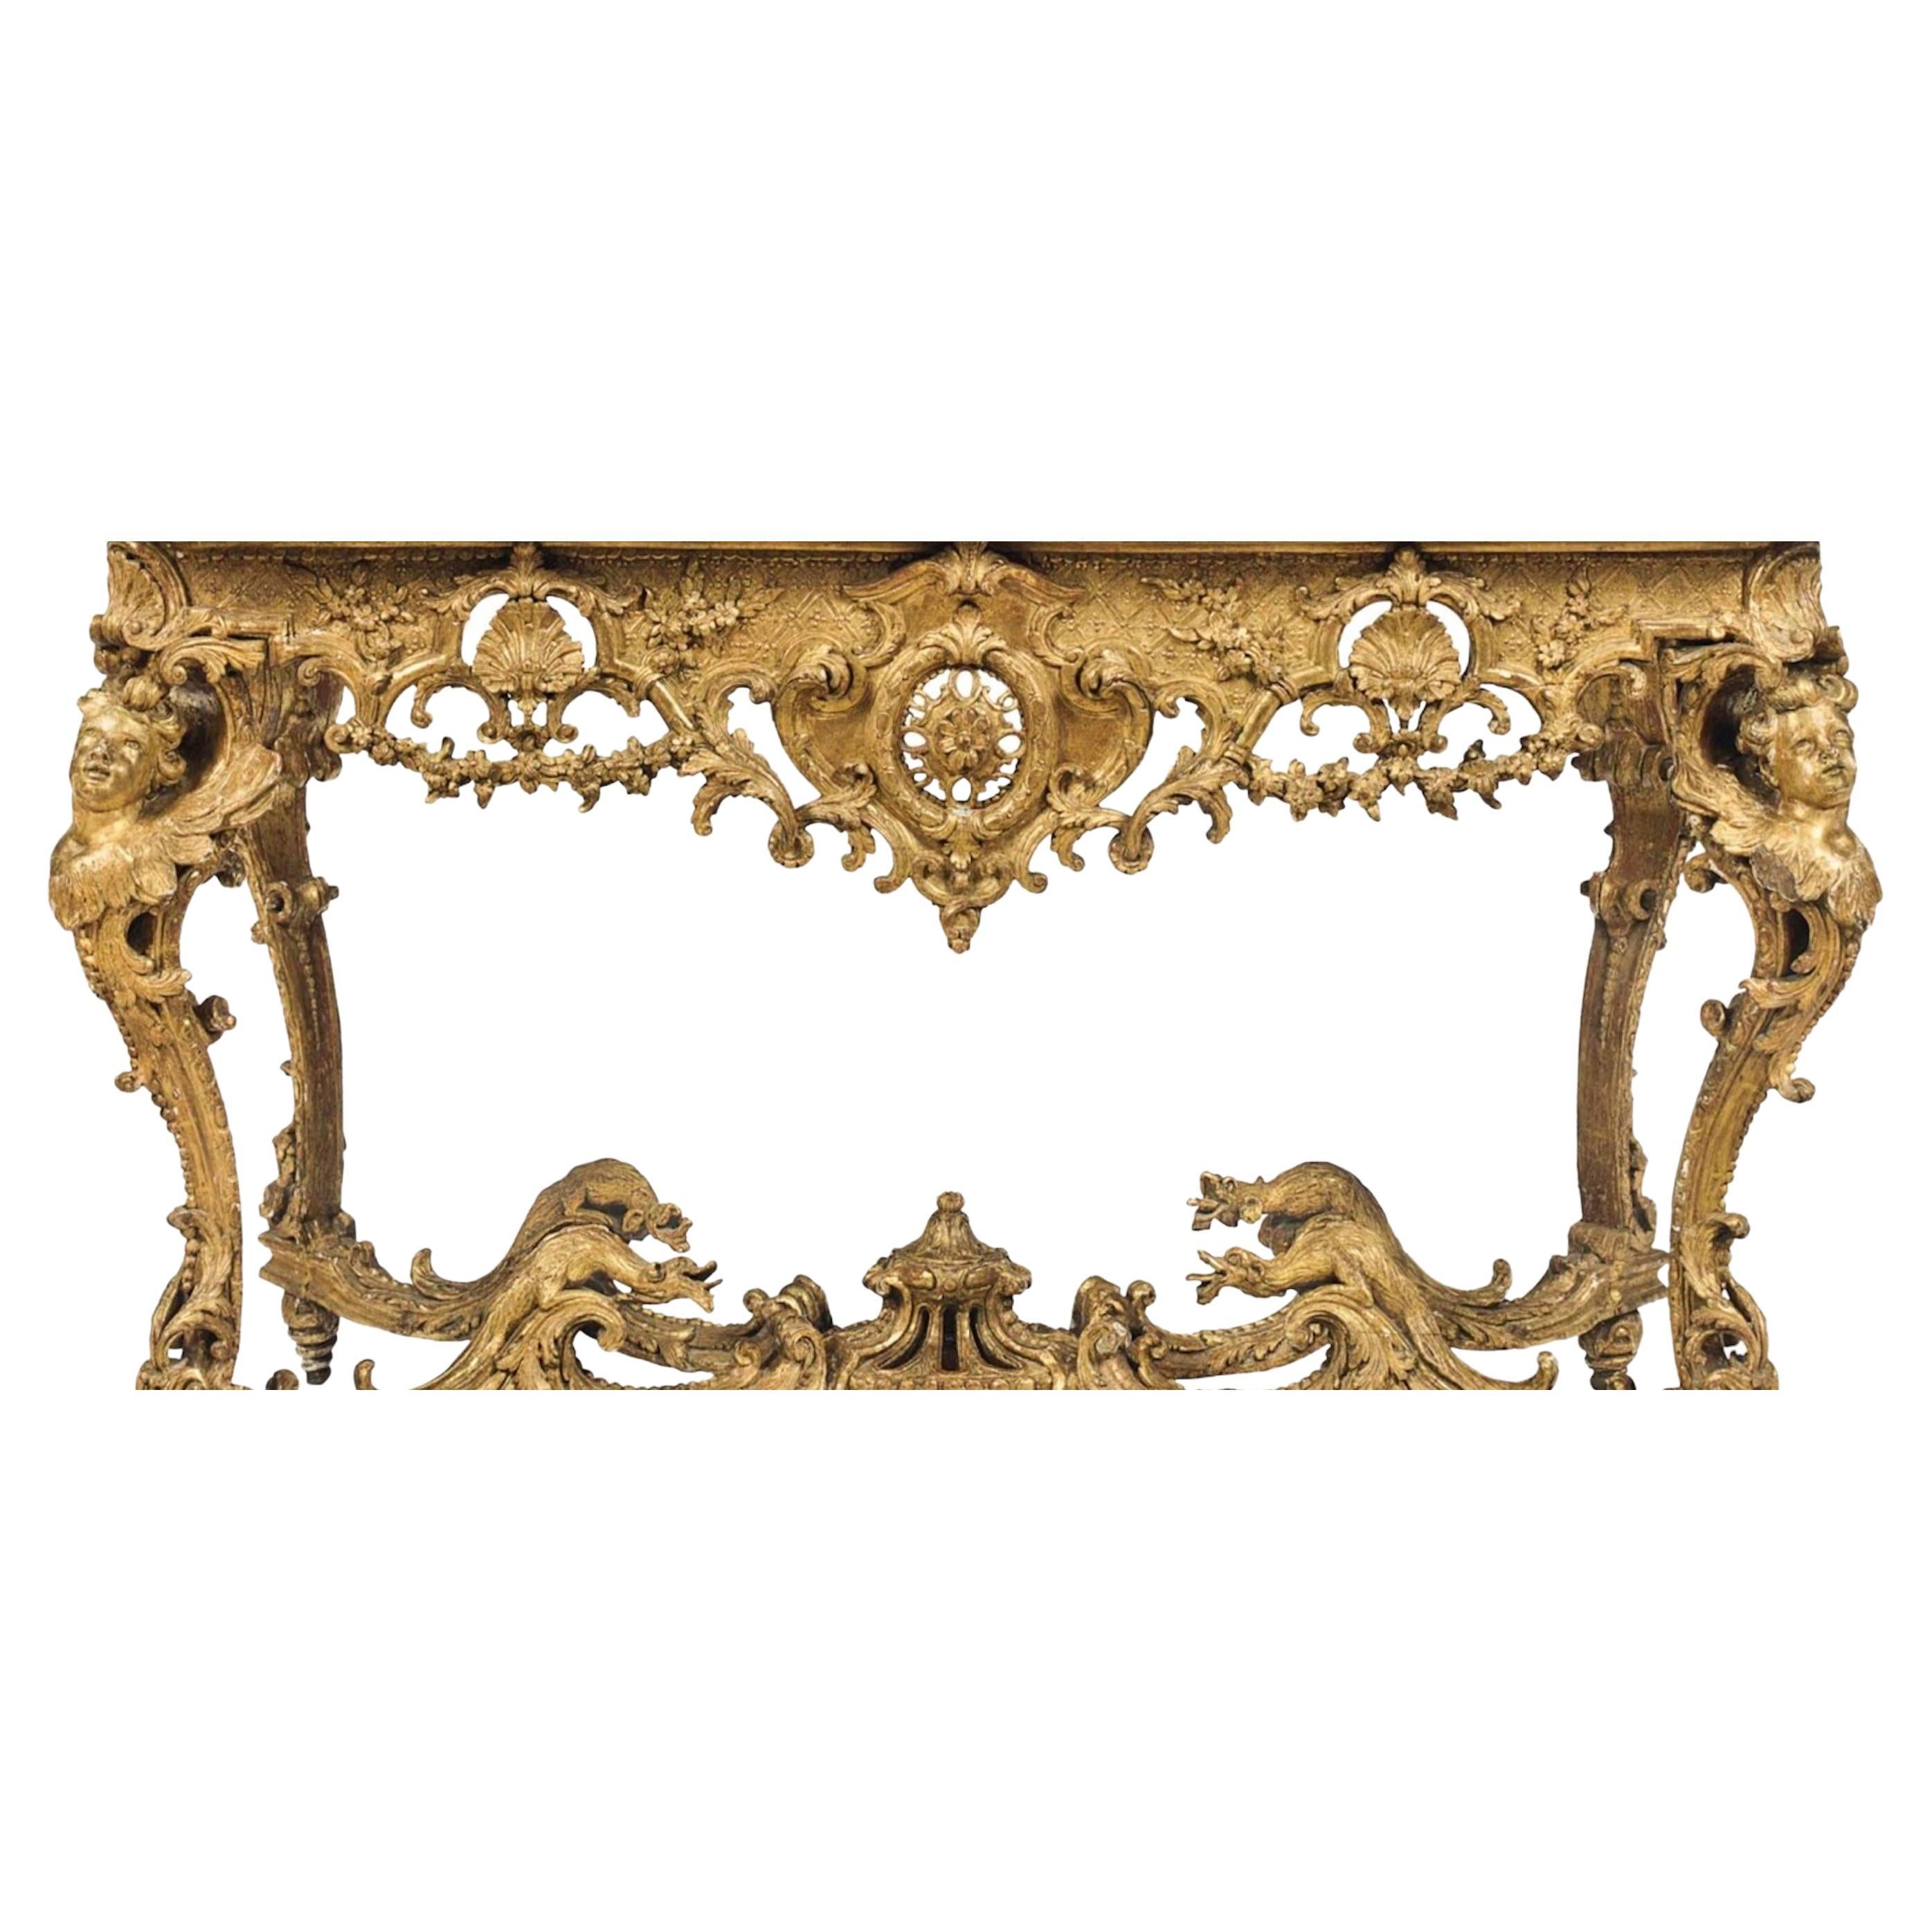 Une table console en bois doré de style Régence a été créée vers 1720-1725. Le plateau en marbre de Sienne, plus tardif, surmontant une frise sculptée et ajourée, est décoré de guirlandes florales. Les pieds à tête de buste et à volutes sont reliés